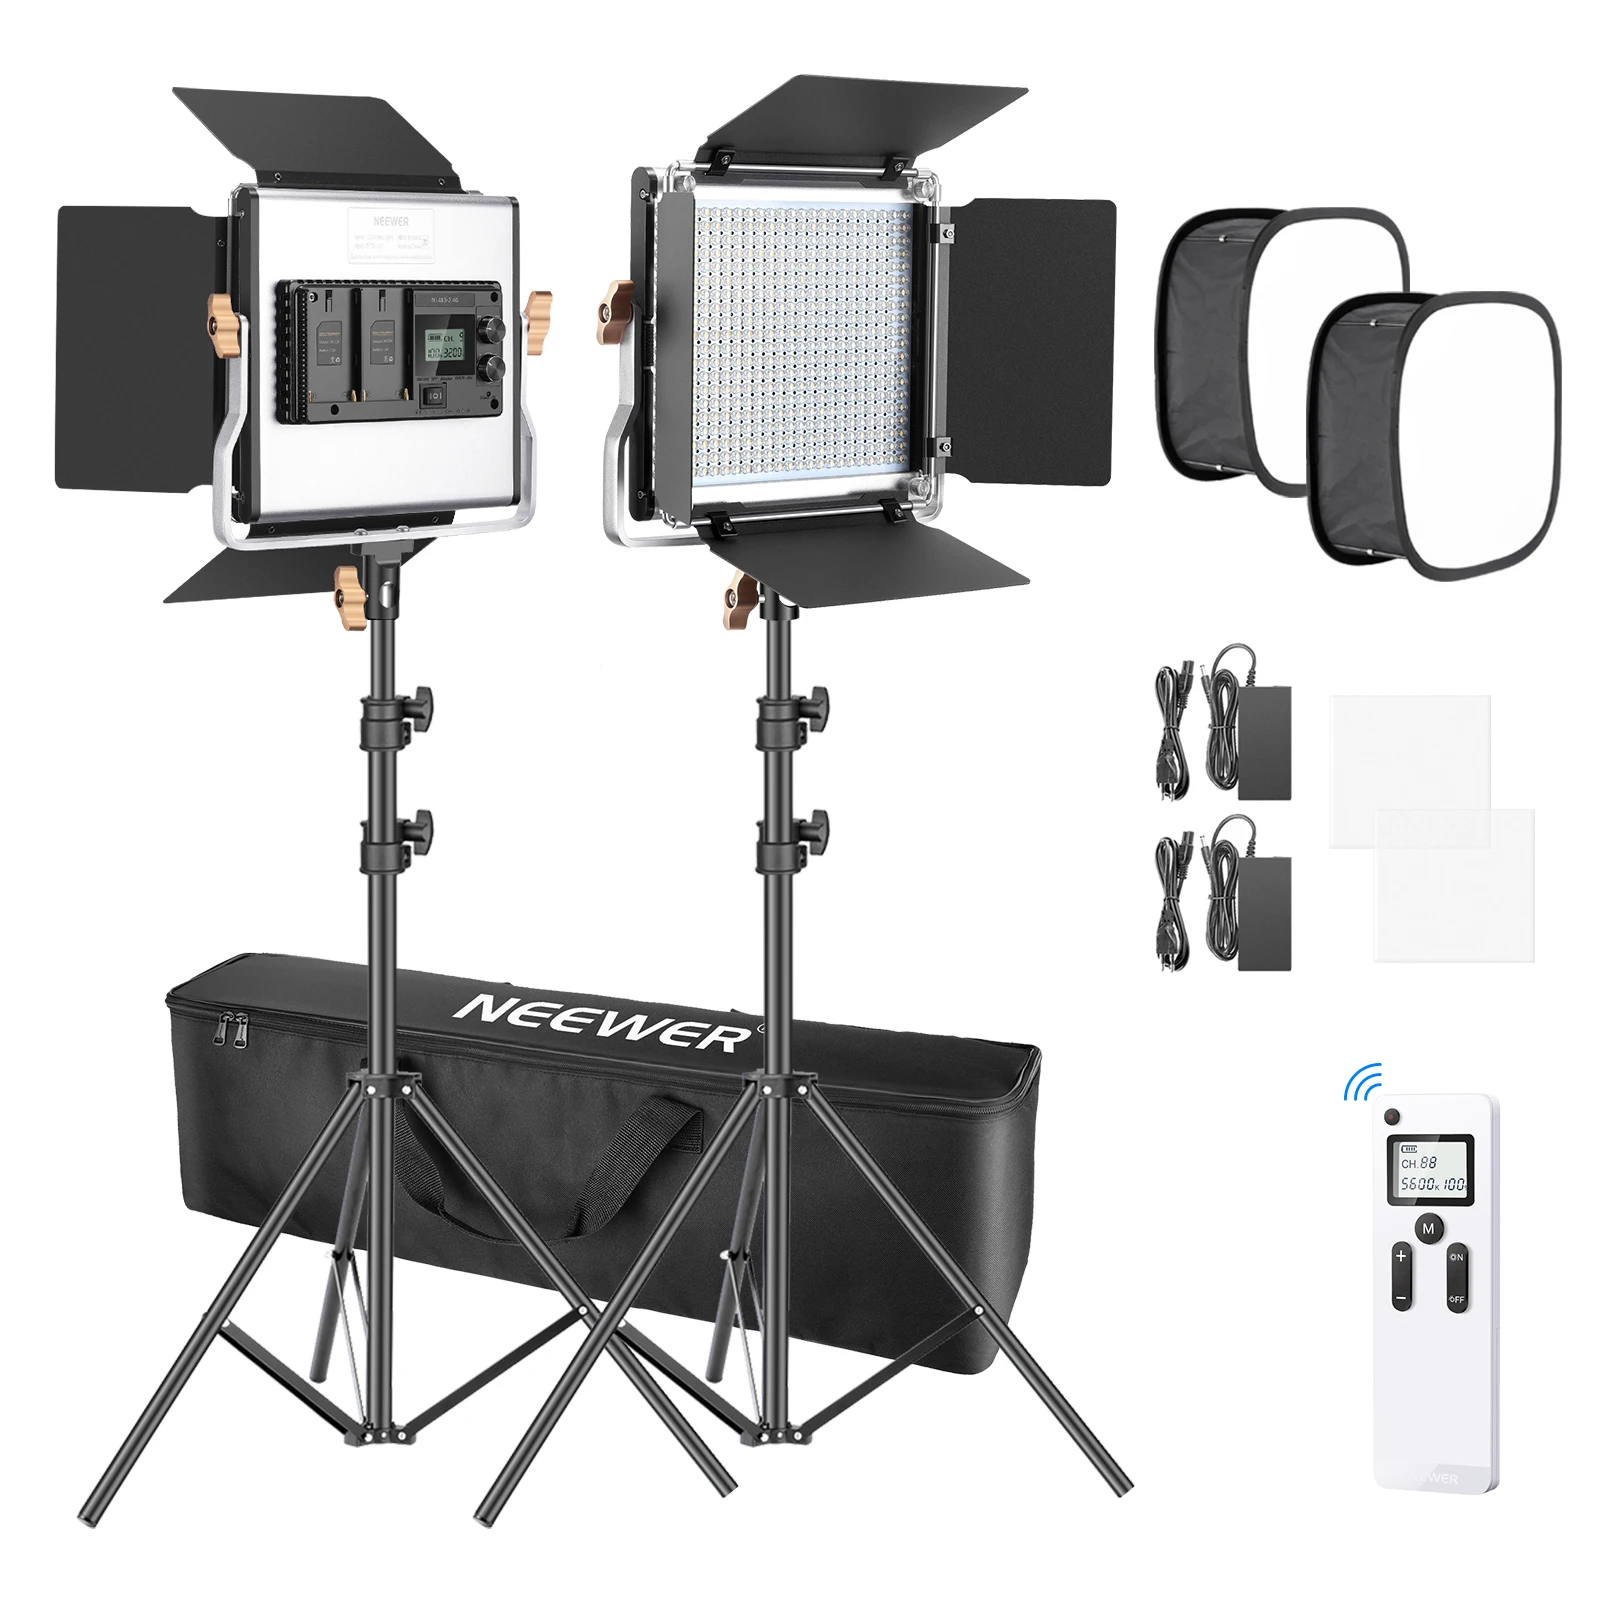 Neewer 2 Paket 480 LED Video İşığı Fotoğraf Aydınlatma Kiti, LED Panel ile 2.4 G Kablosuz Uzaktan Kumanda, 480 LED Panel ve ışık Standı 0